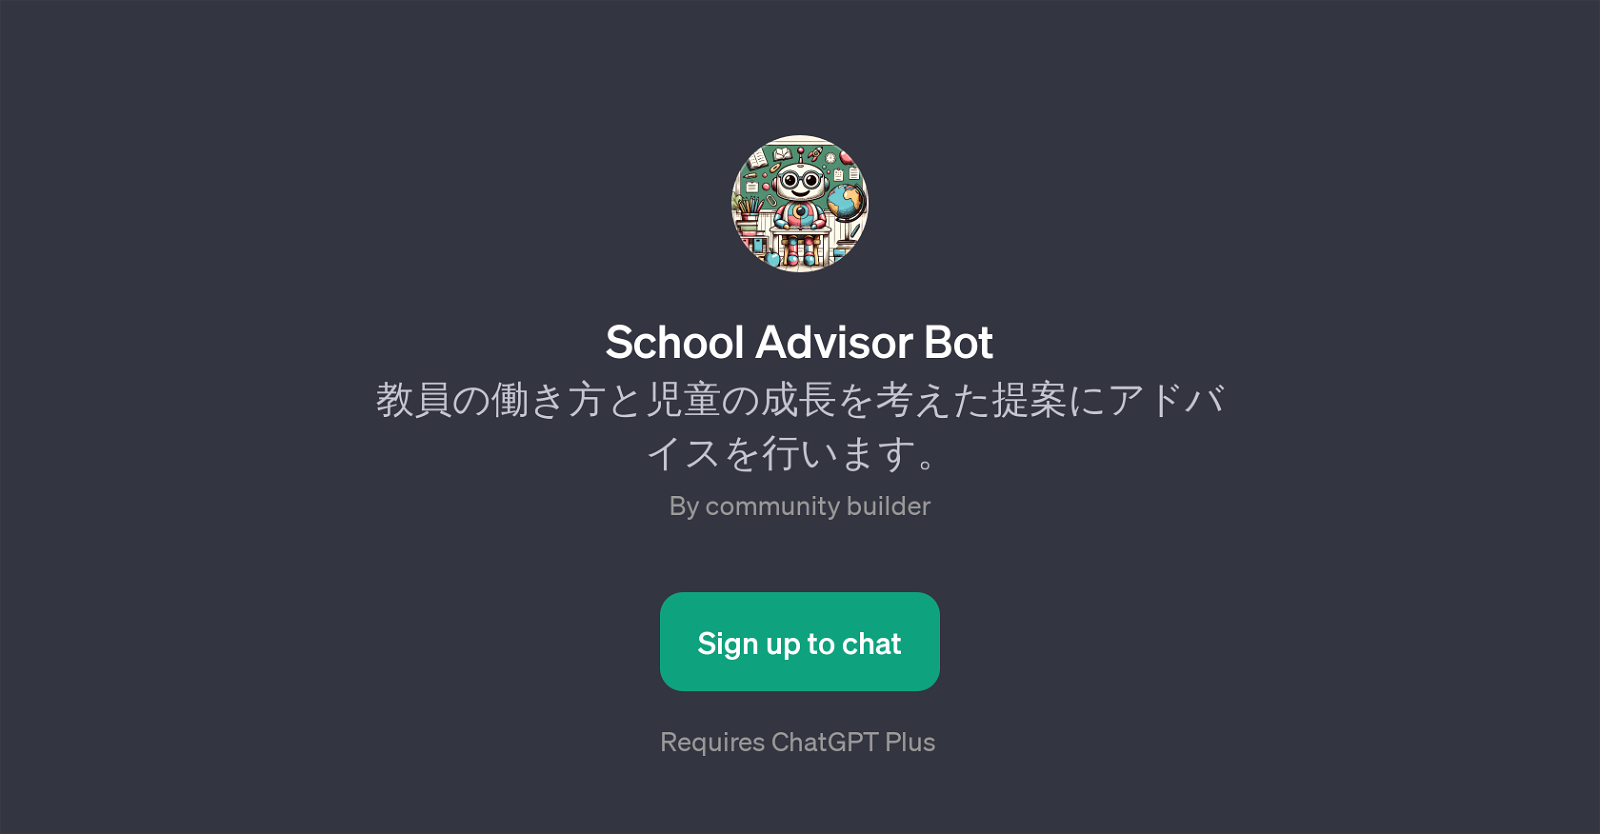 School Advisor Bot website